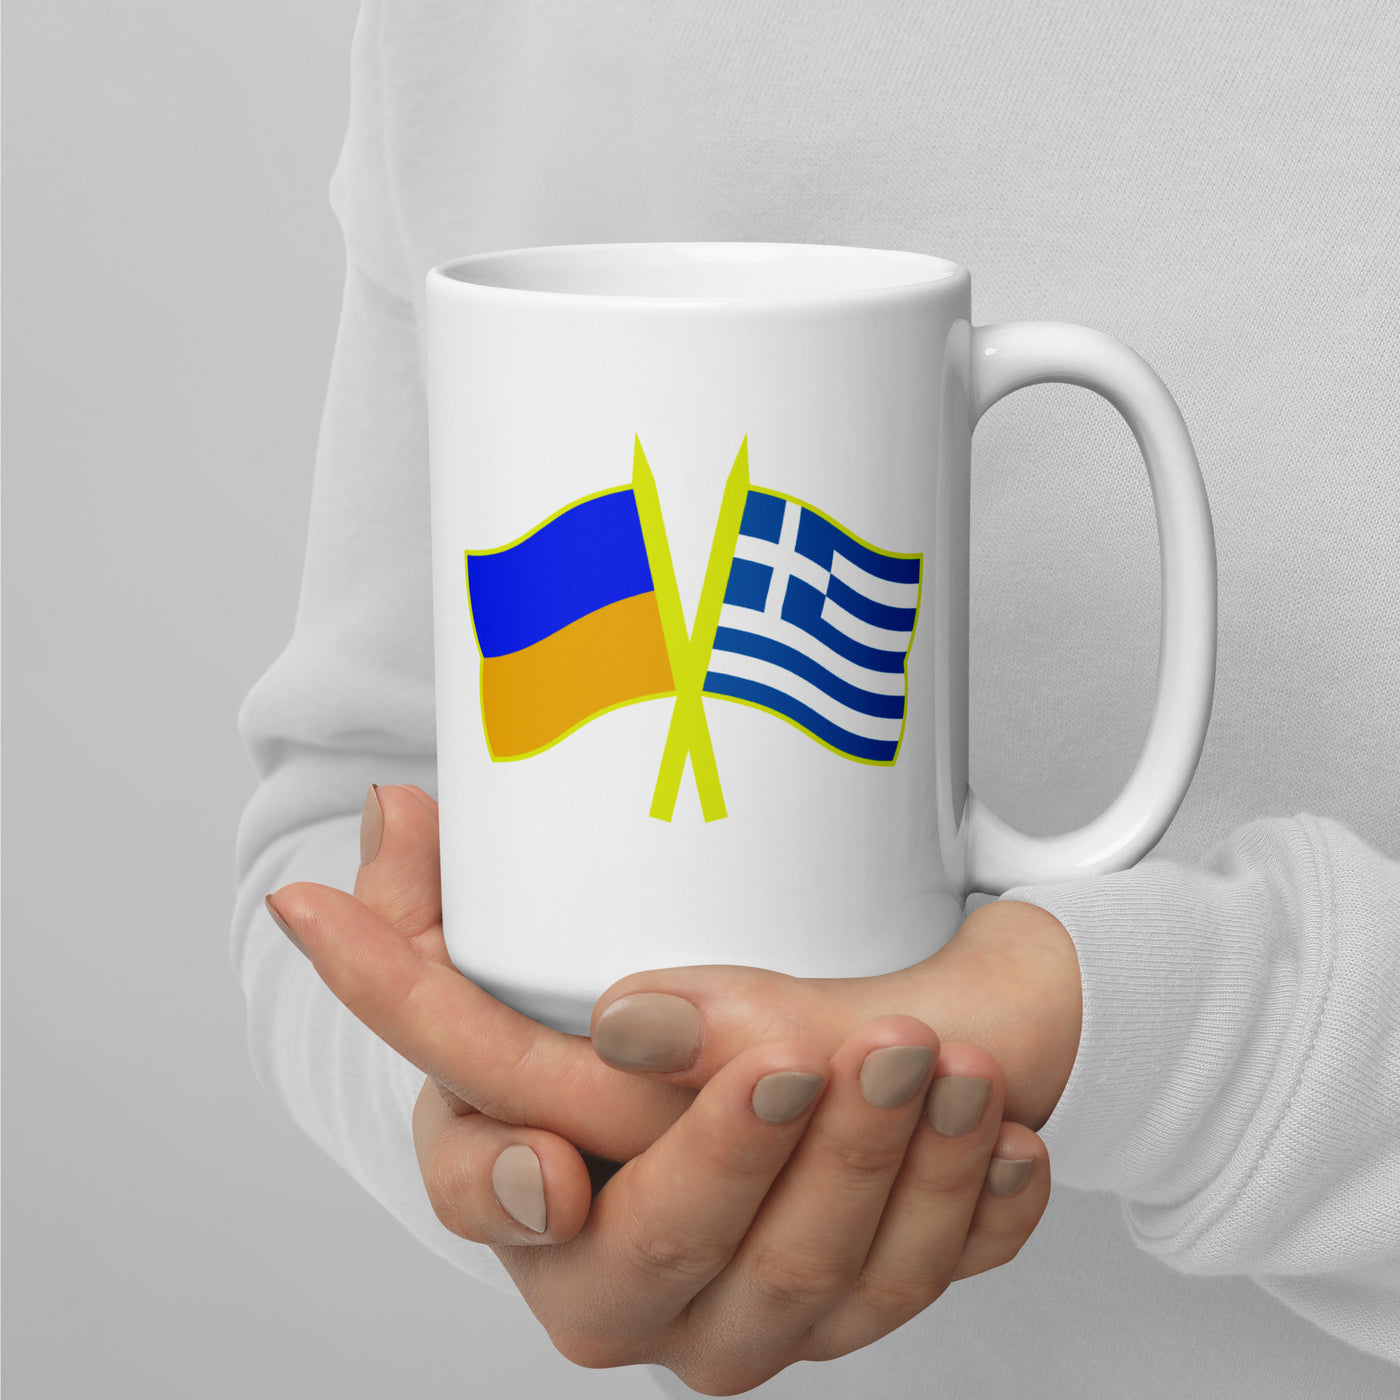 Greece-Ukraine Mug